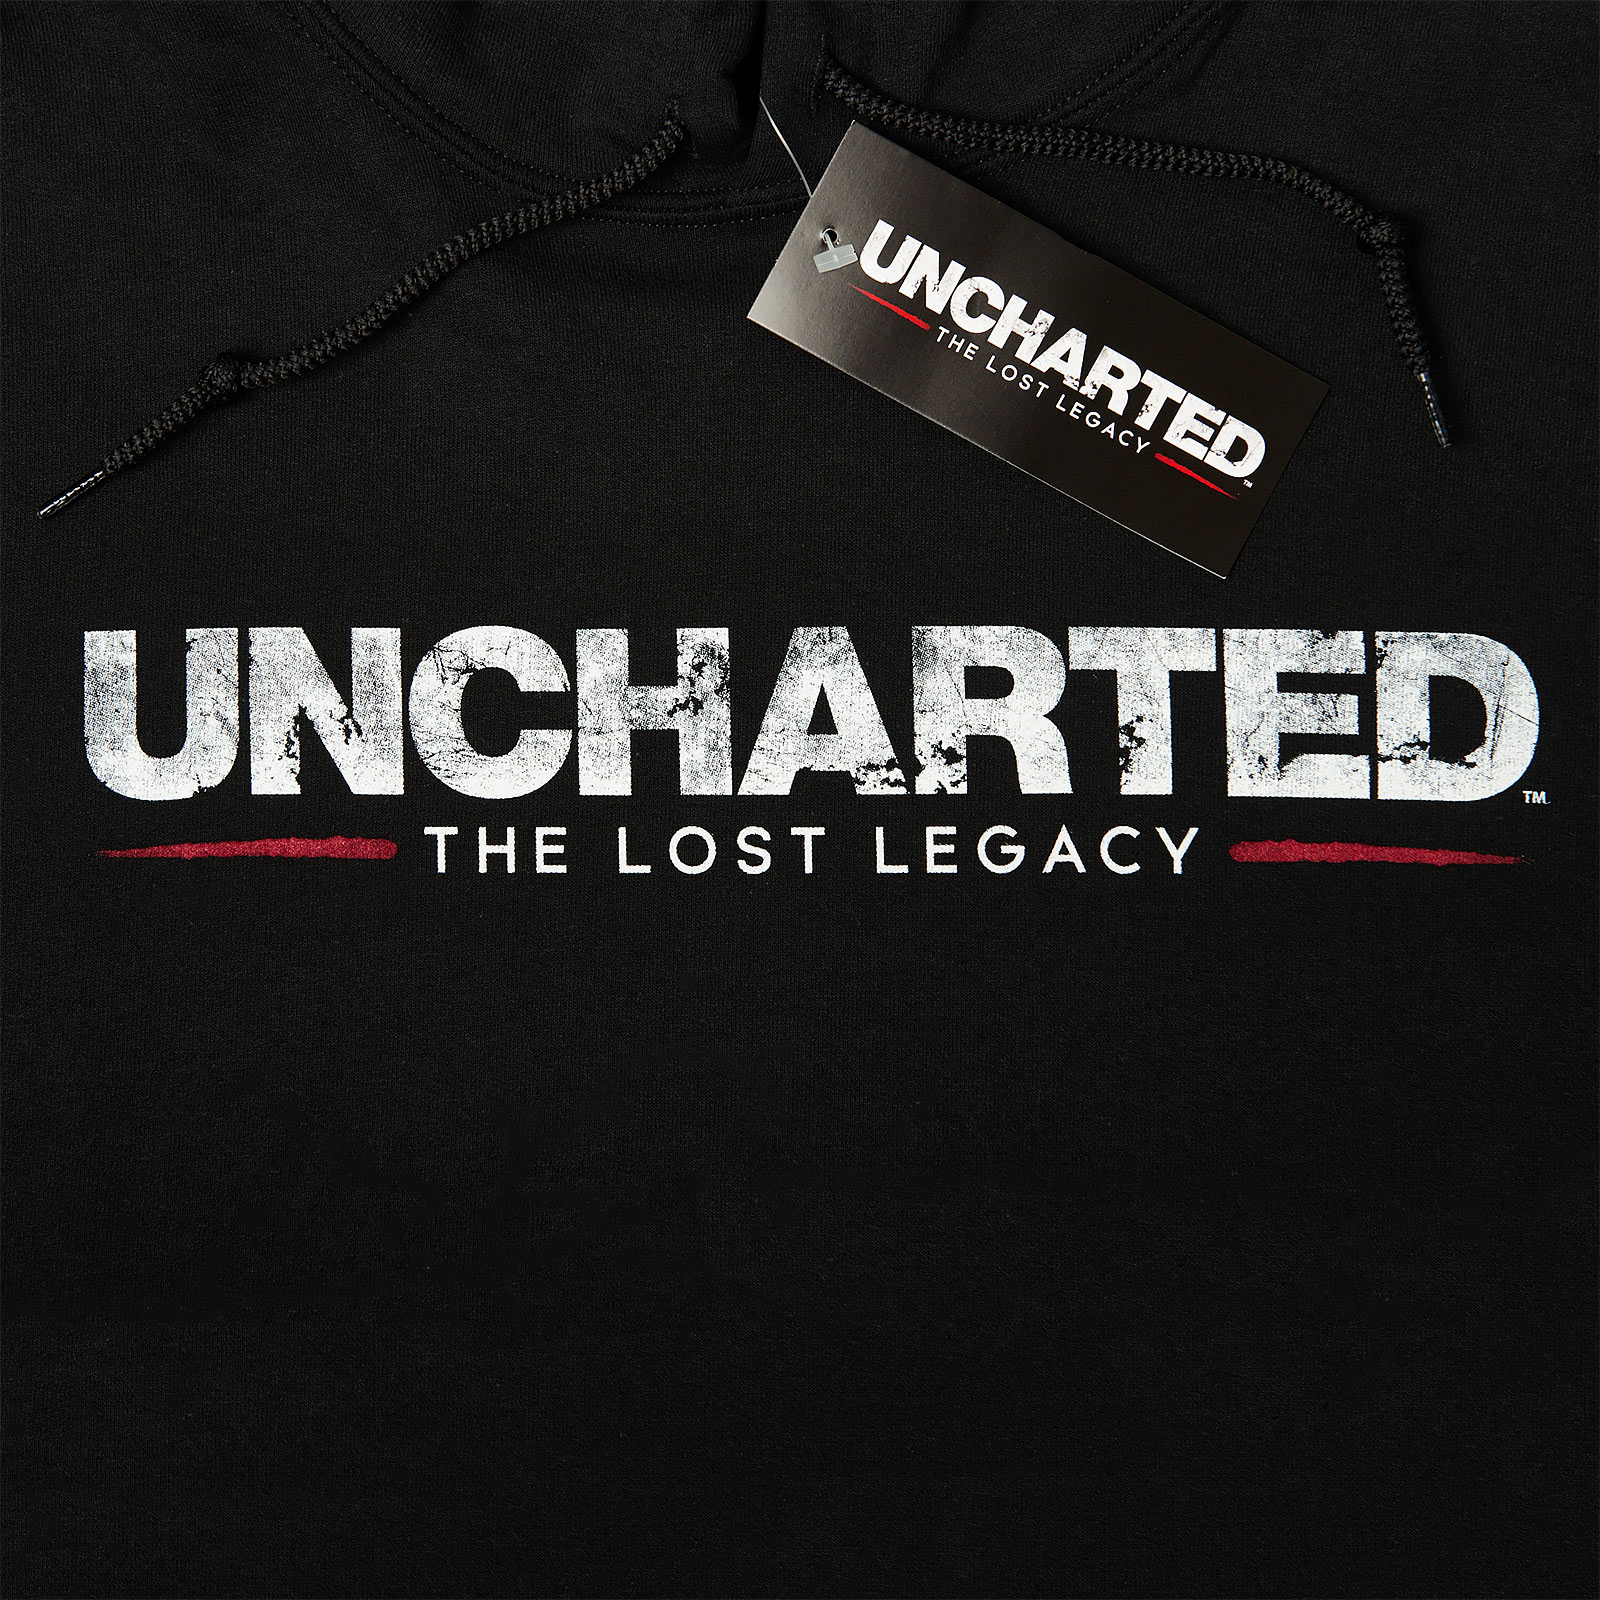 Uncharted - Logo Hoodie schwarz